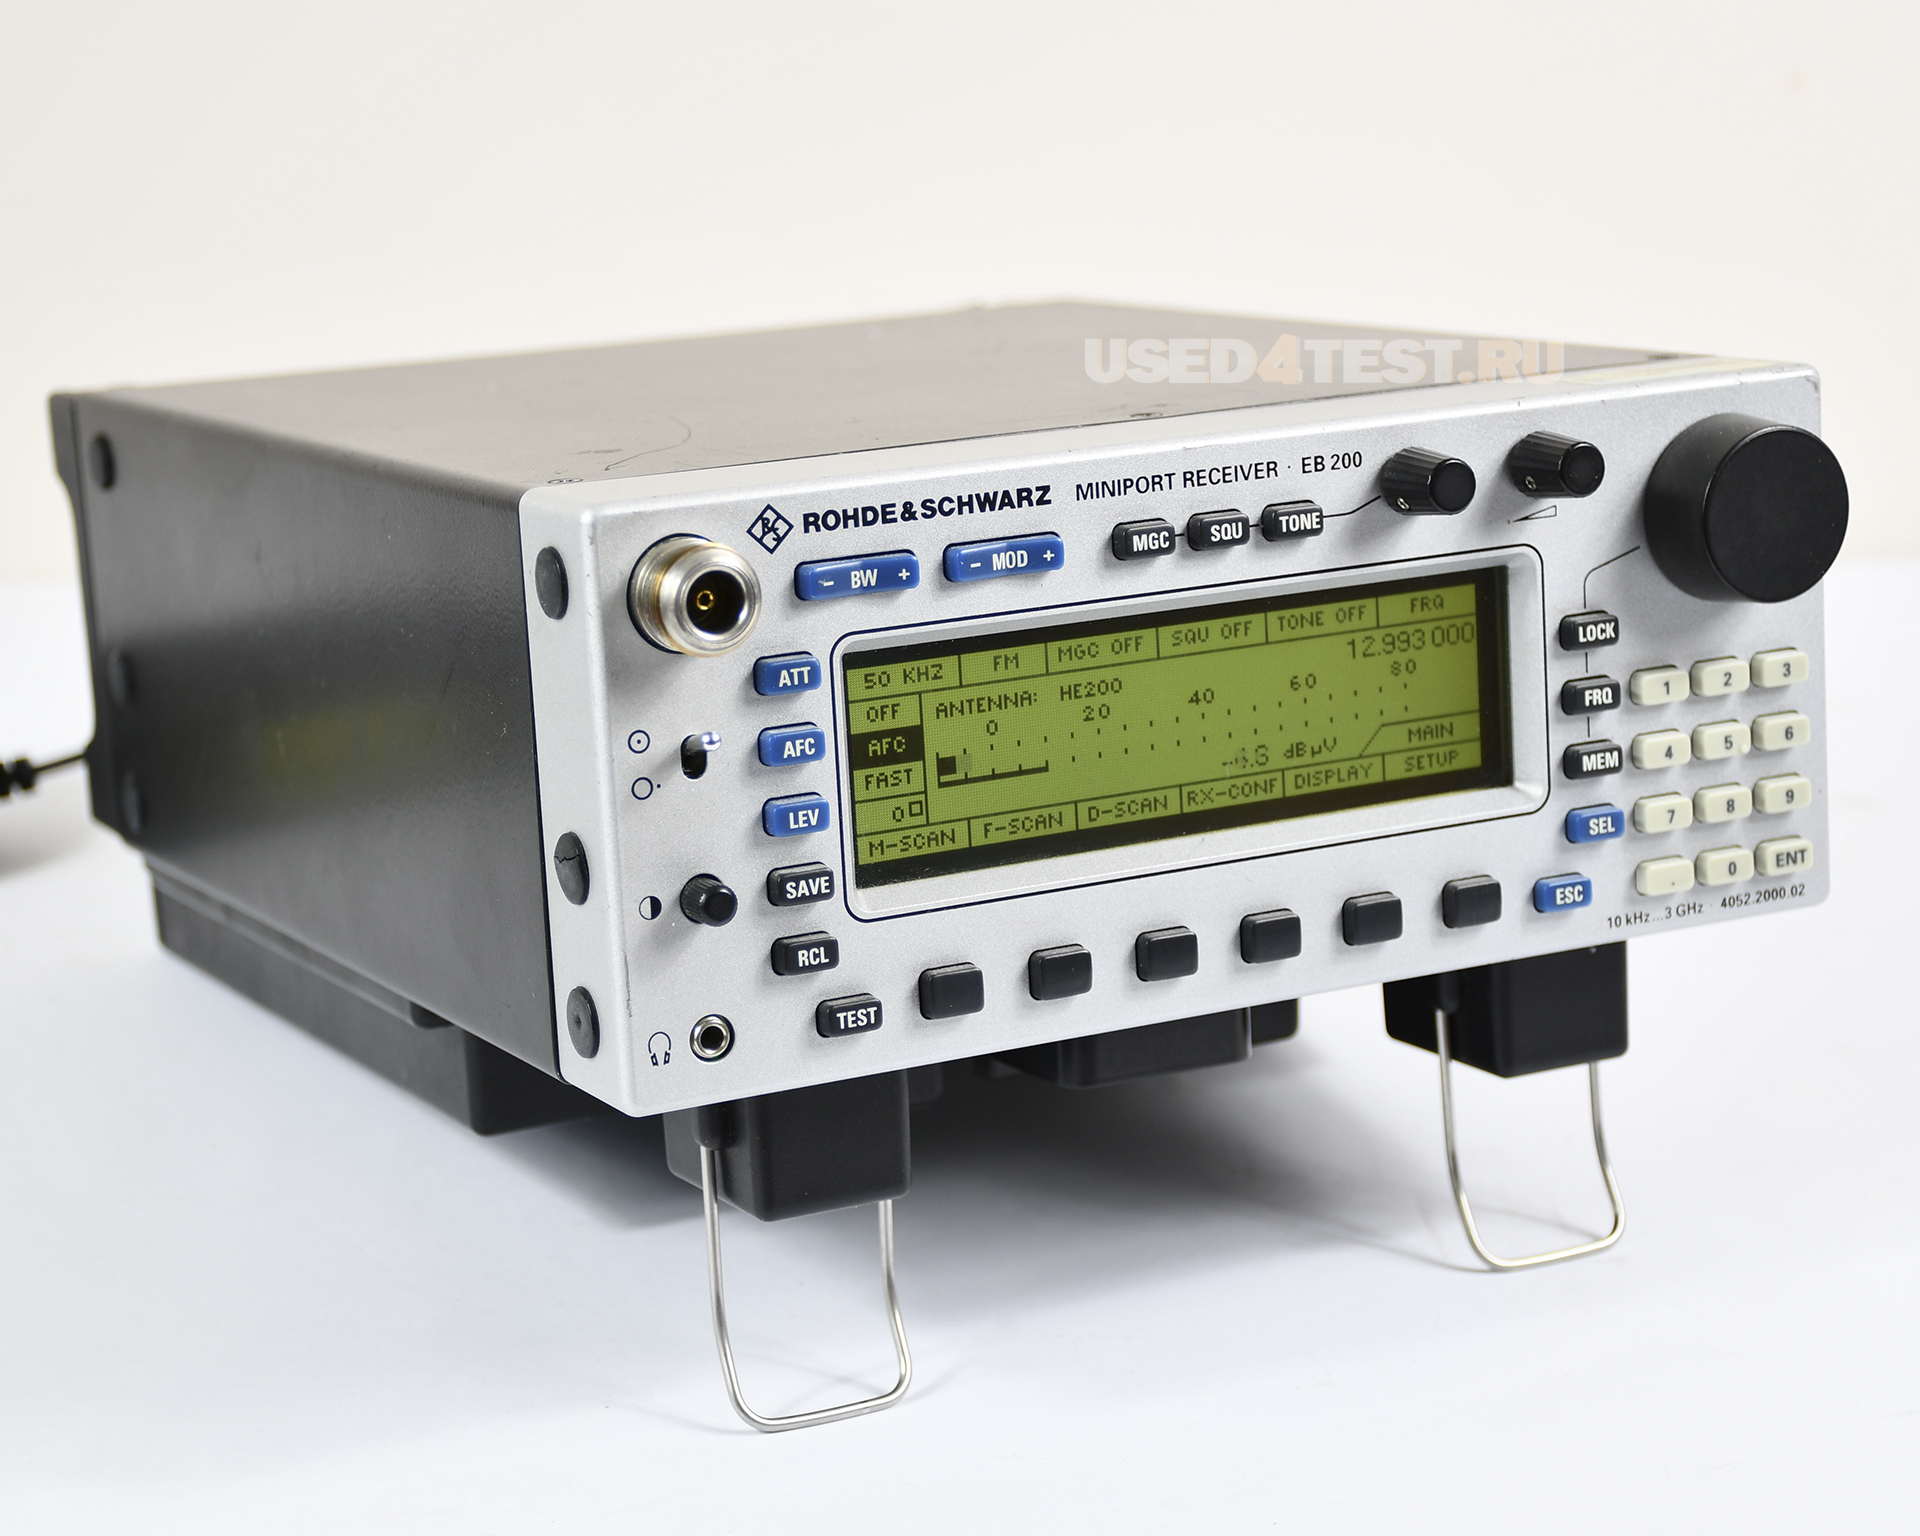 Портативный приемник Rohde&Schwarz EB200с диапазоном 10 кГц - 3 ГГц
